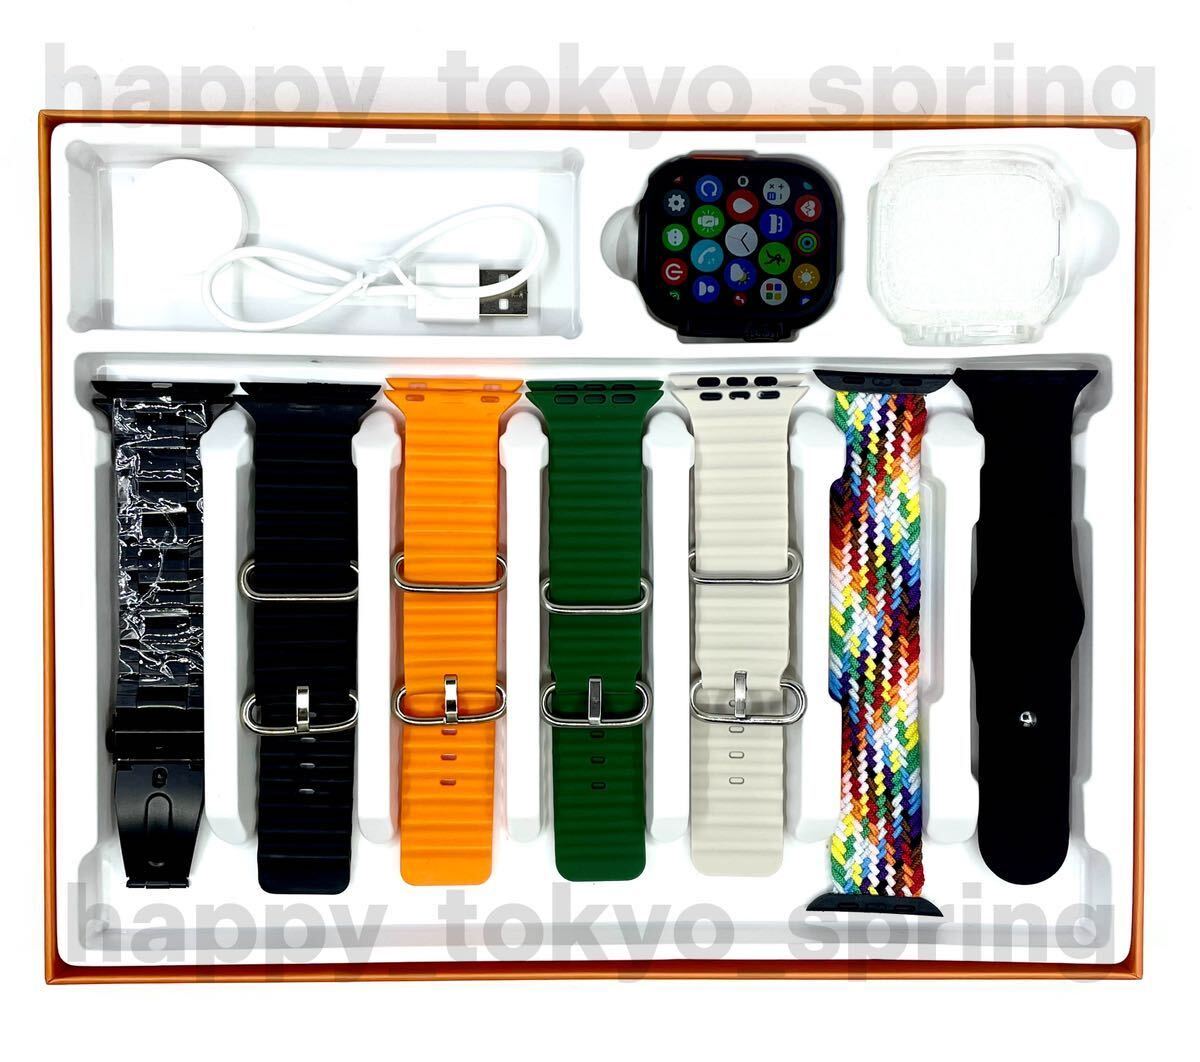  новый товар Watch9 Pro Max большой экран частота 7 вид смарт-часы телефонный разговор музыка многофункциональный здоровье . средний кислород кровяное давление Apple Watch9 товар-заменитель.